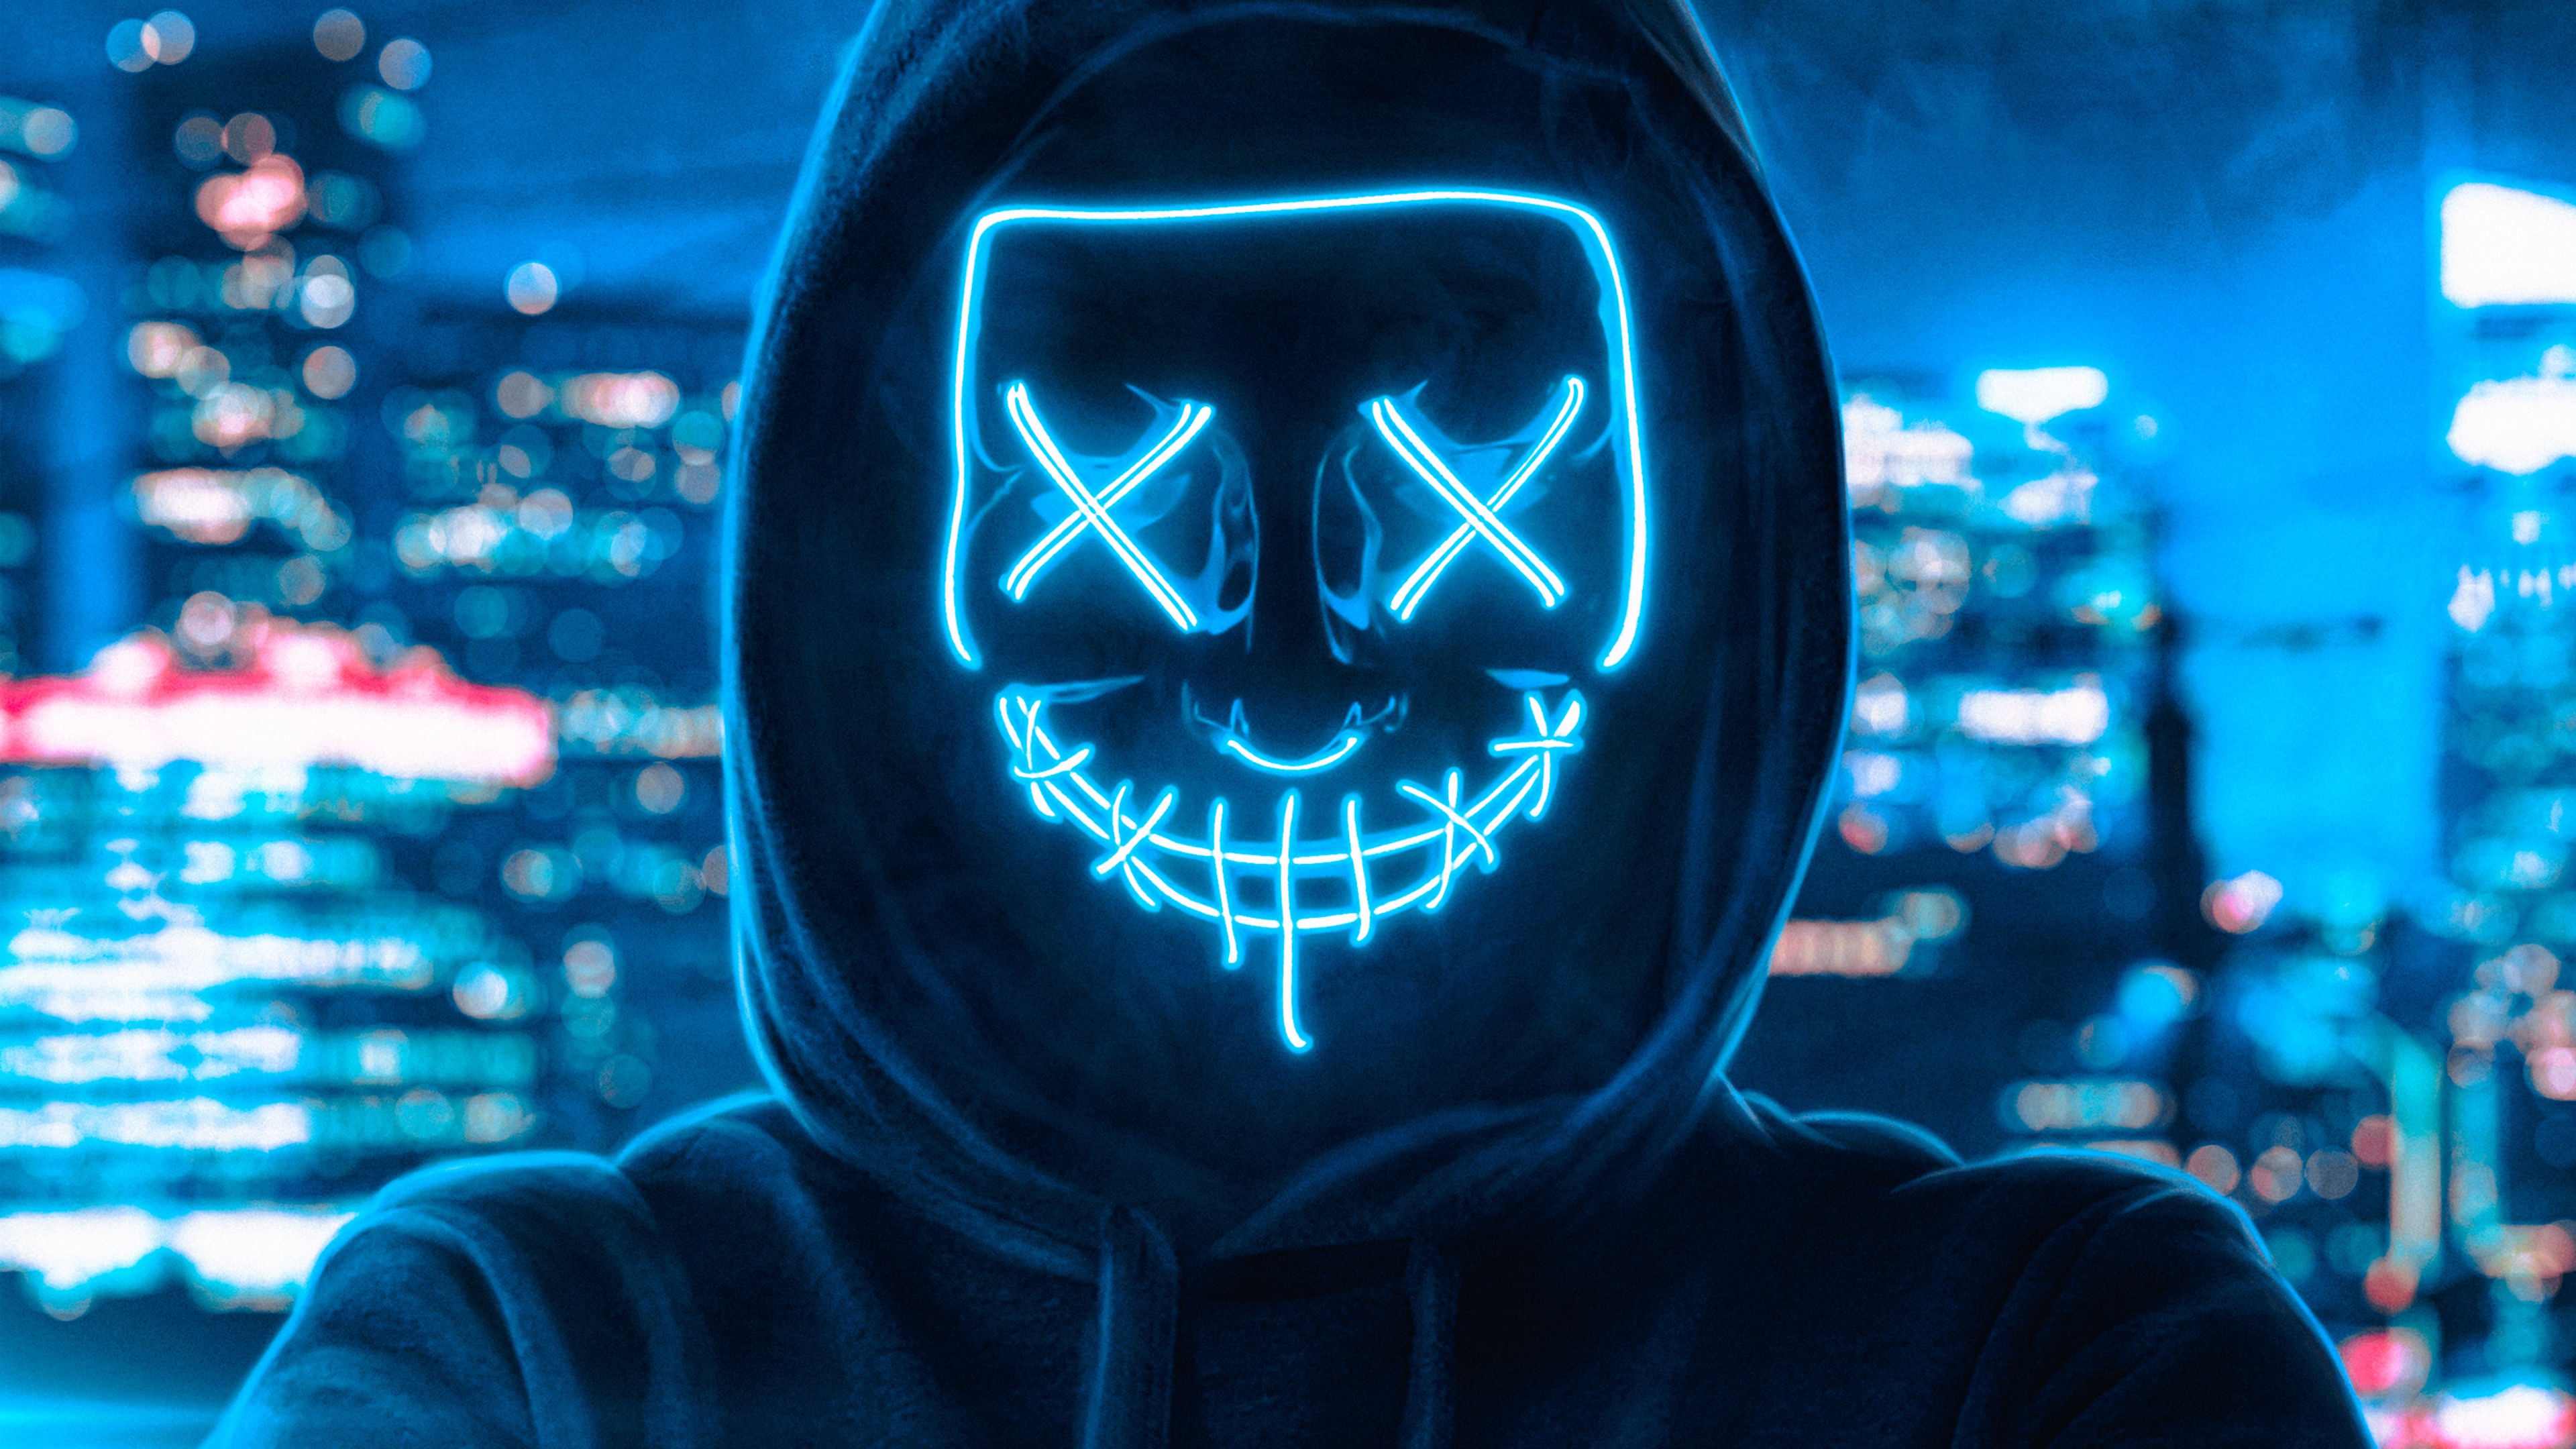 Аватарка на комп. Анонимус неон Маск Маск. Человек в неоновой маске. Маска хакера. Неоновая маска с капюшоном.